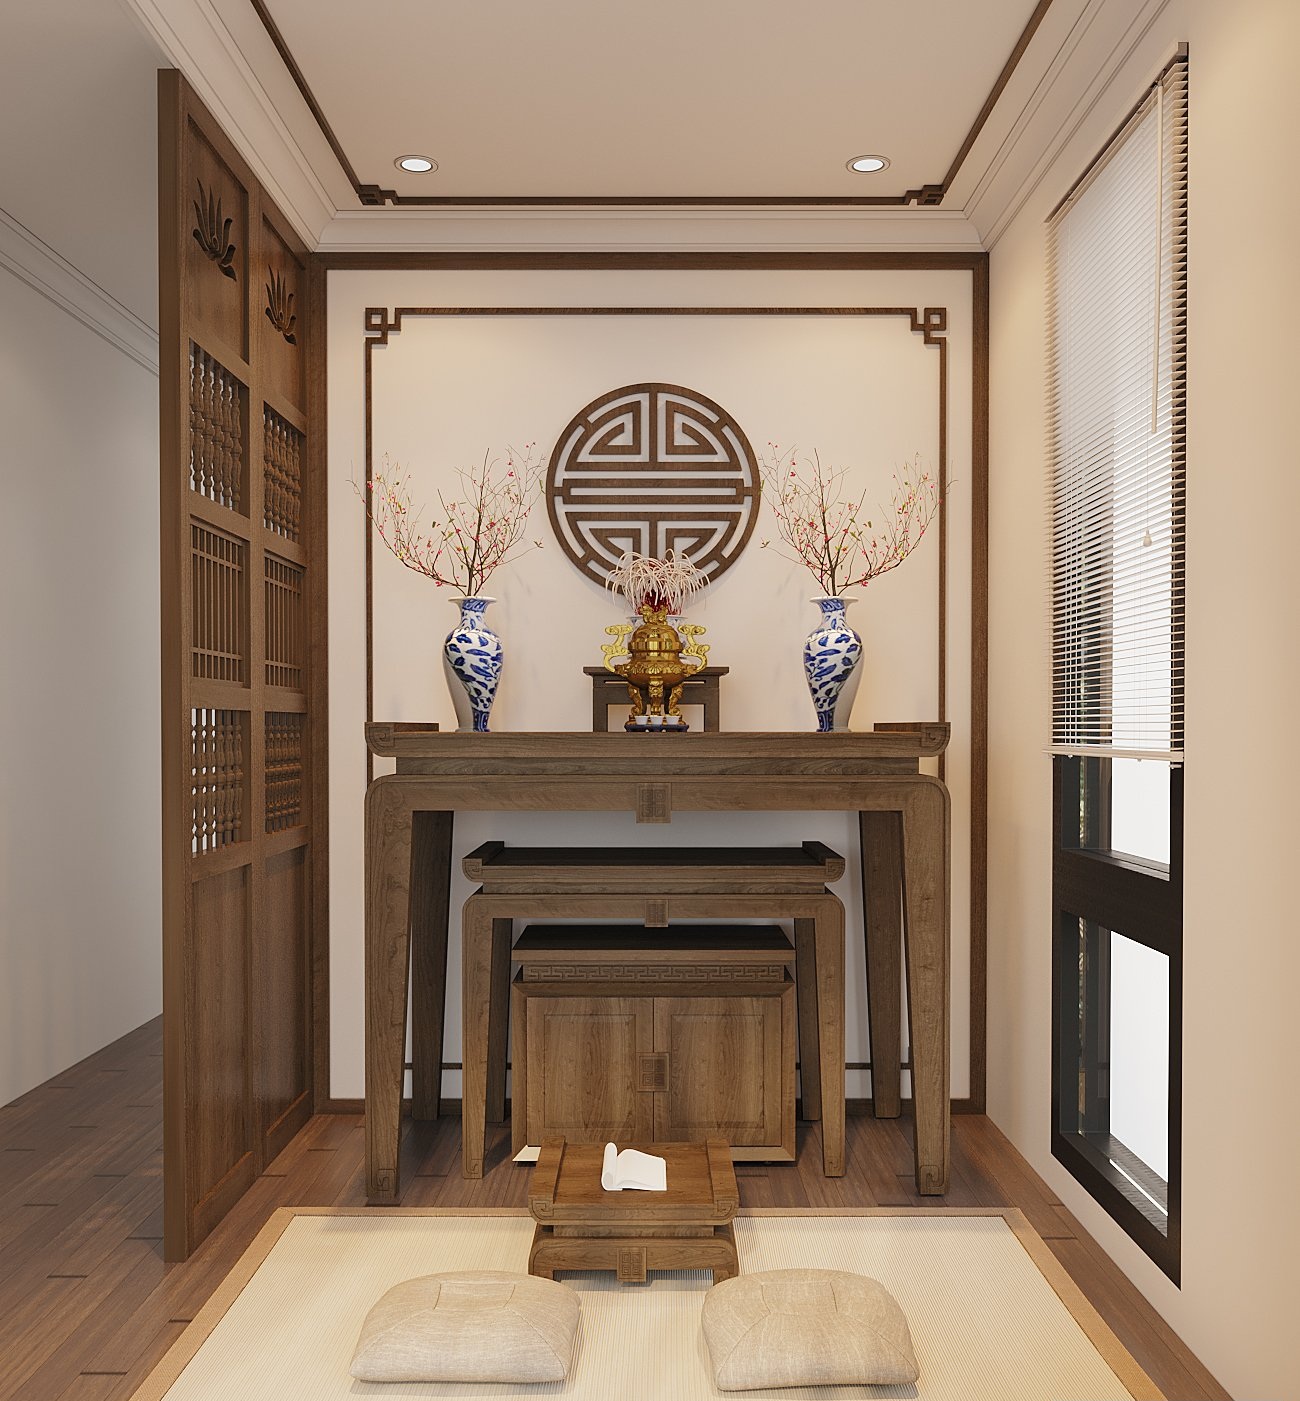 Không gian phòng thờ được thiết kế và bài trí theo phong cách truyền thống Á Đông, đảm bảo tính yên tĩnh, trang nghiêm cần có.